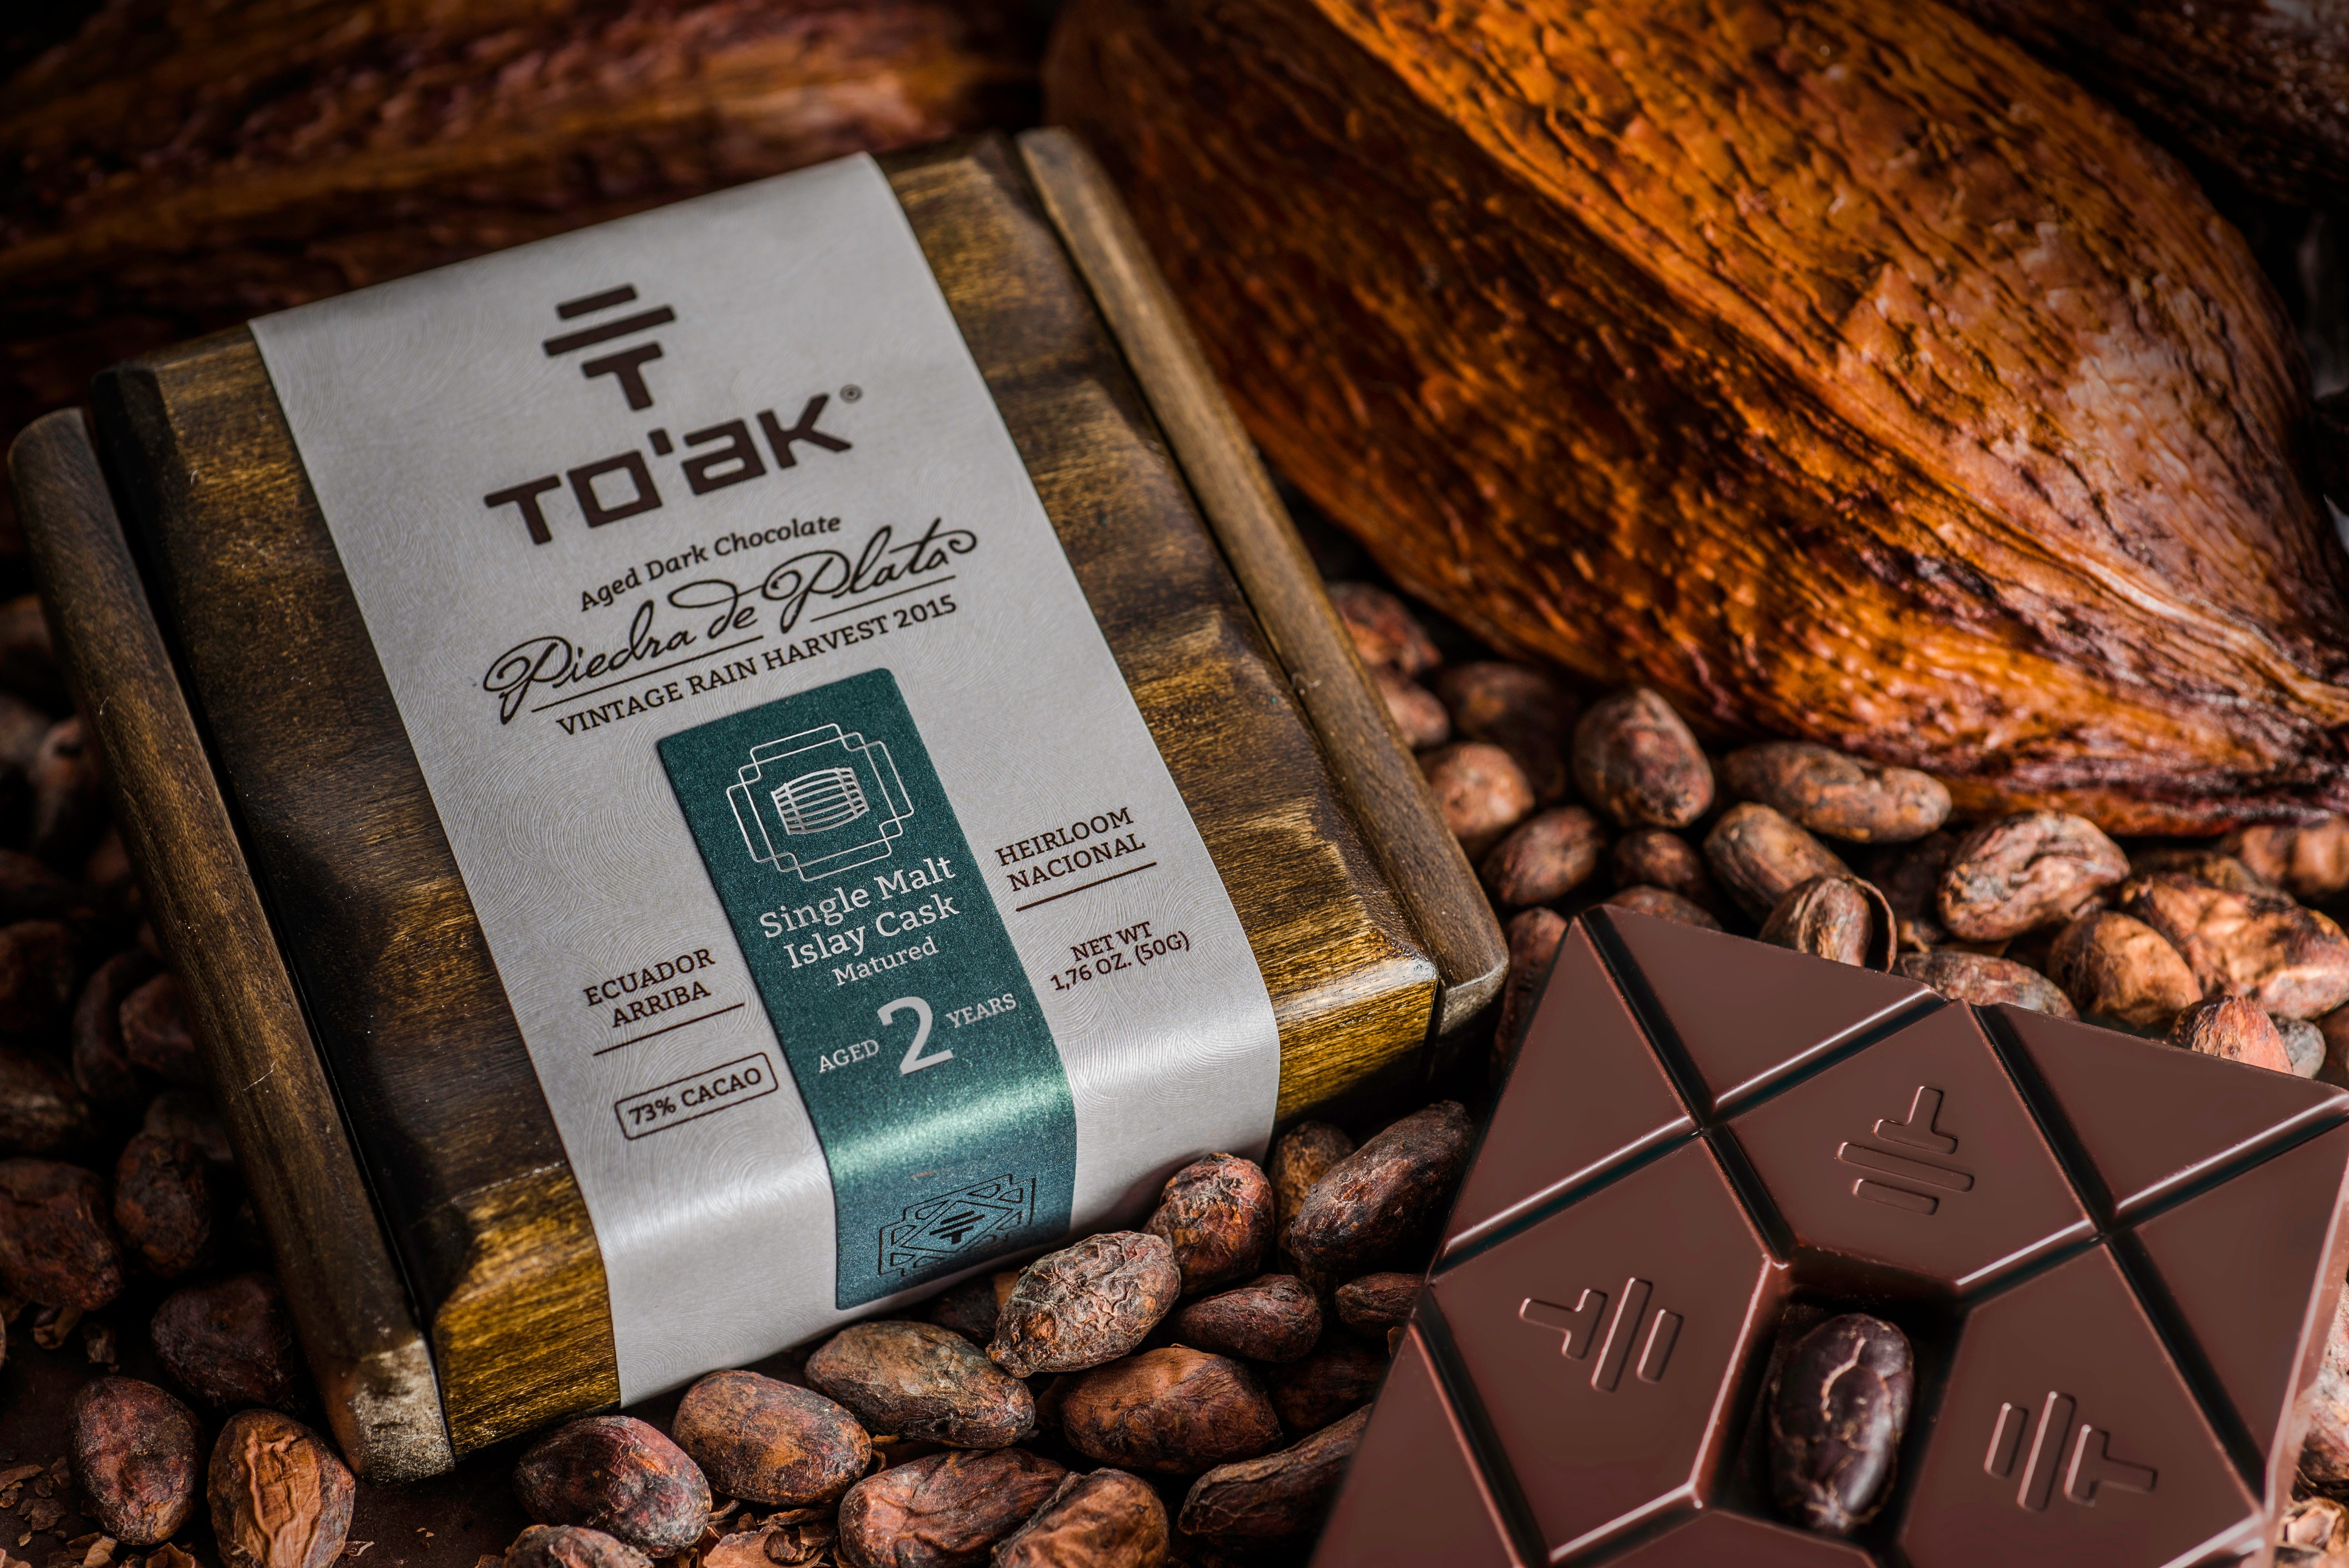 Шоколад купить в махачкале. Шоколад Toak. To'AK шоколад. Натуральный винтажный шоколад. Самый дорогой шоколад.